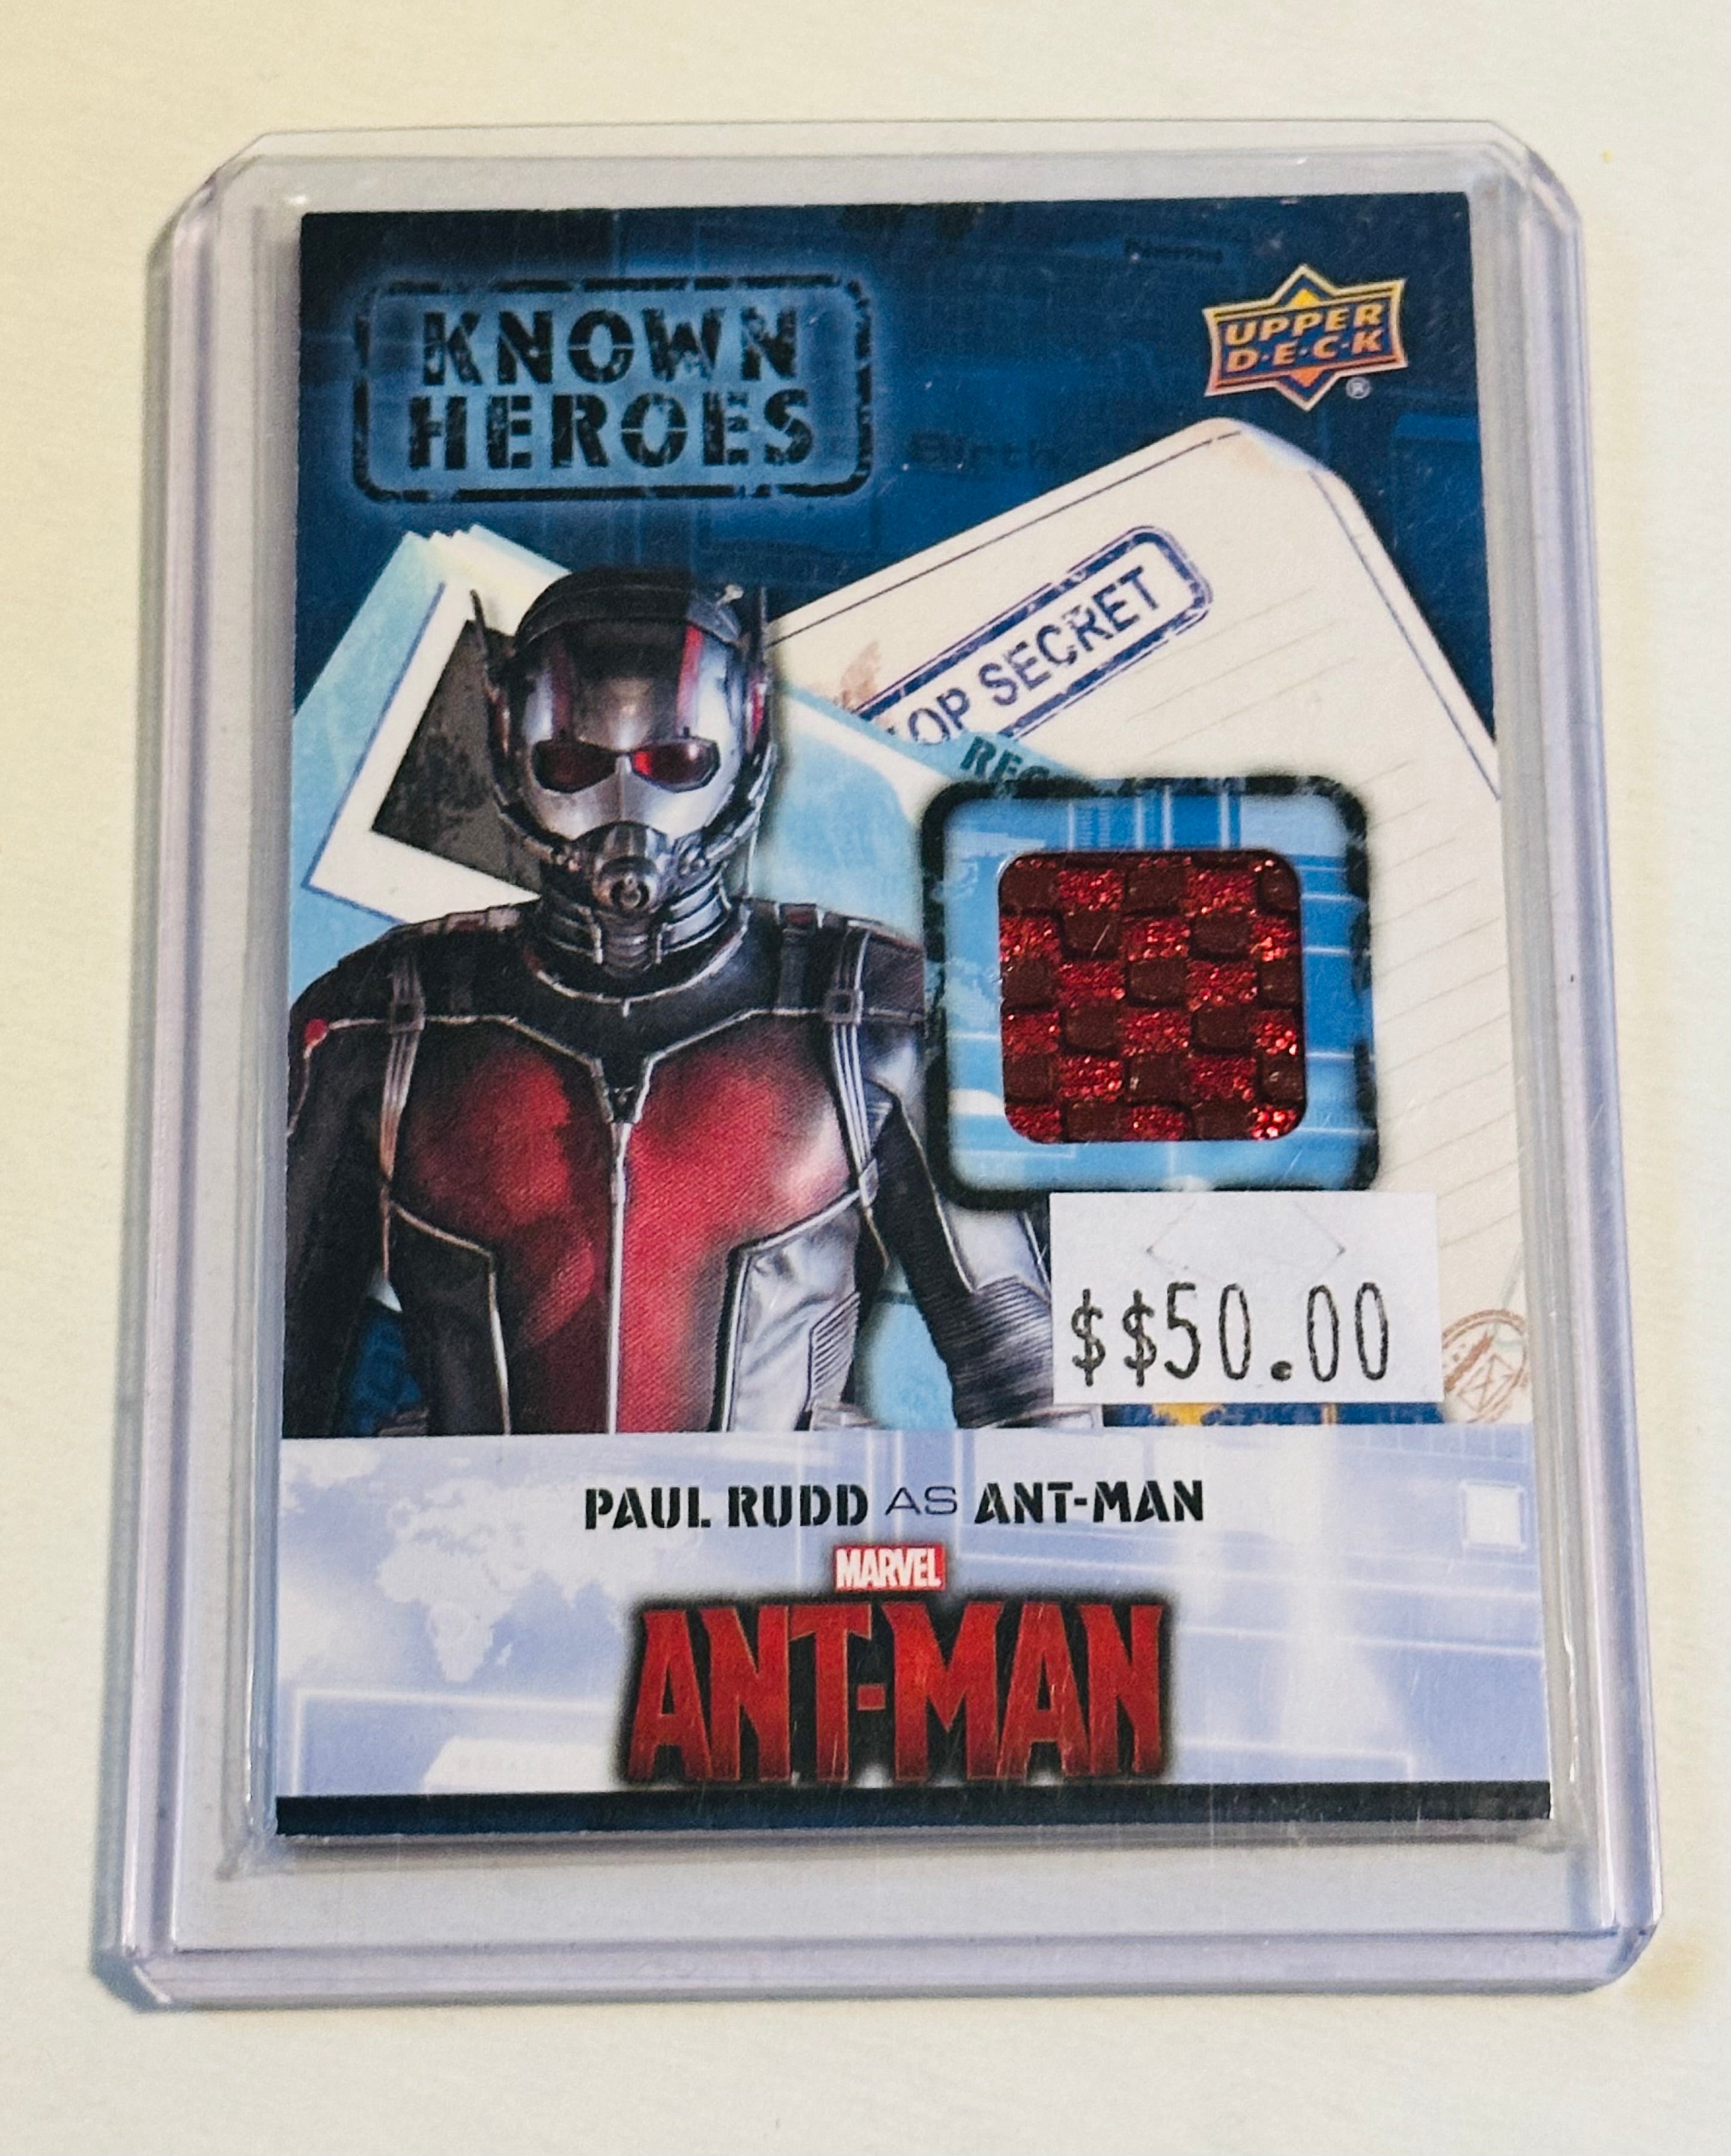 Marvel comics, Ant-man movie memorabilia insert card